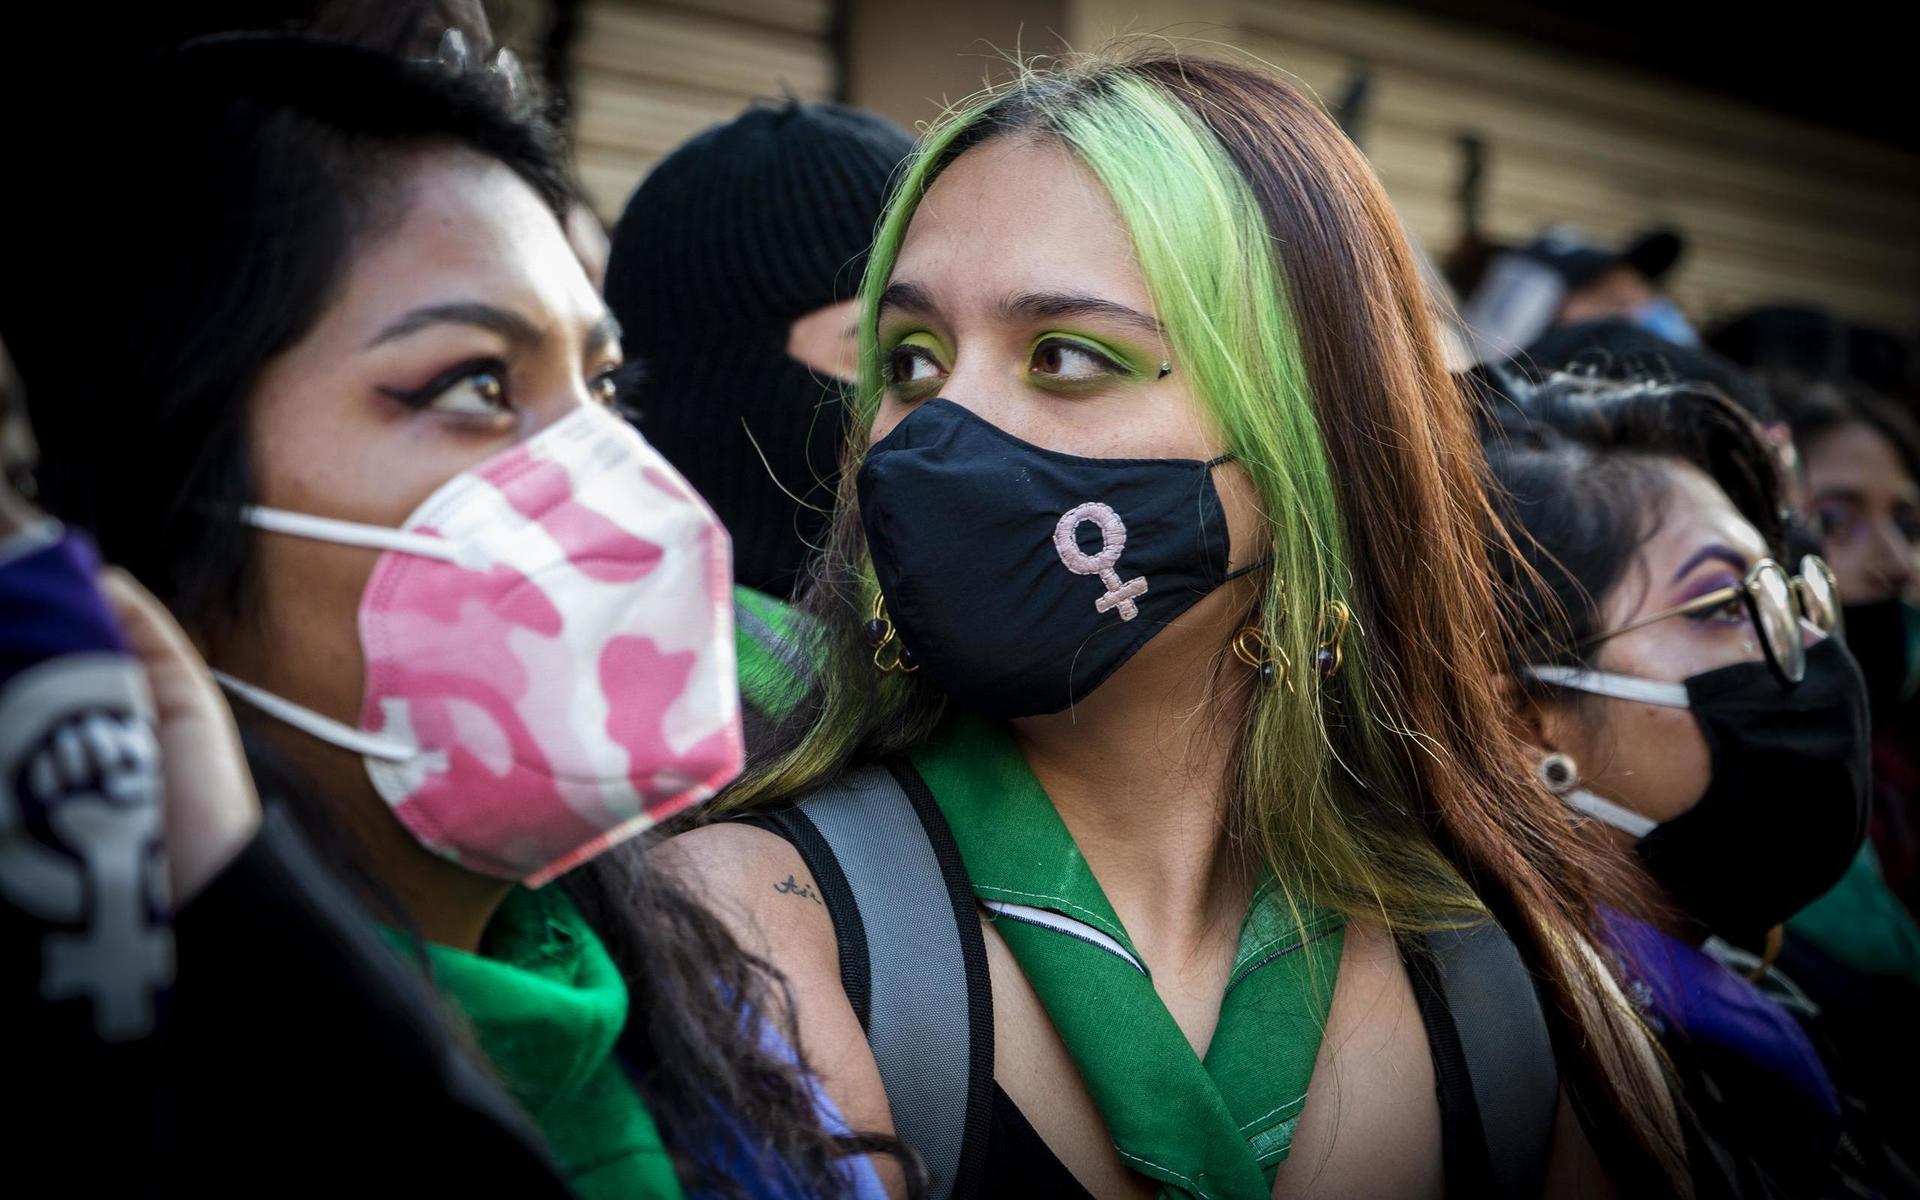 Många av kvinnorna utanför den ockuperade myndighetsbyggnaden bär munskydd eller döljer sina ansikten helt bortsett från ögonen.